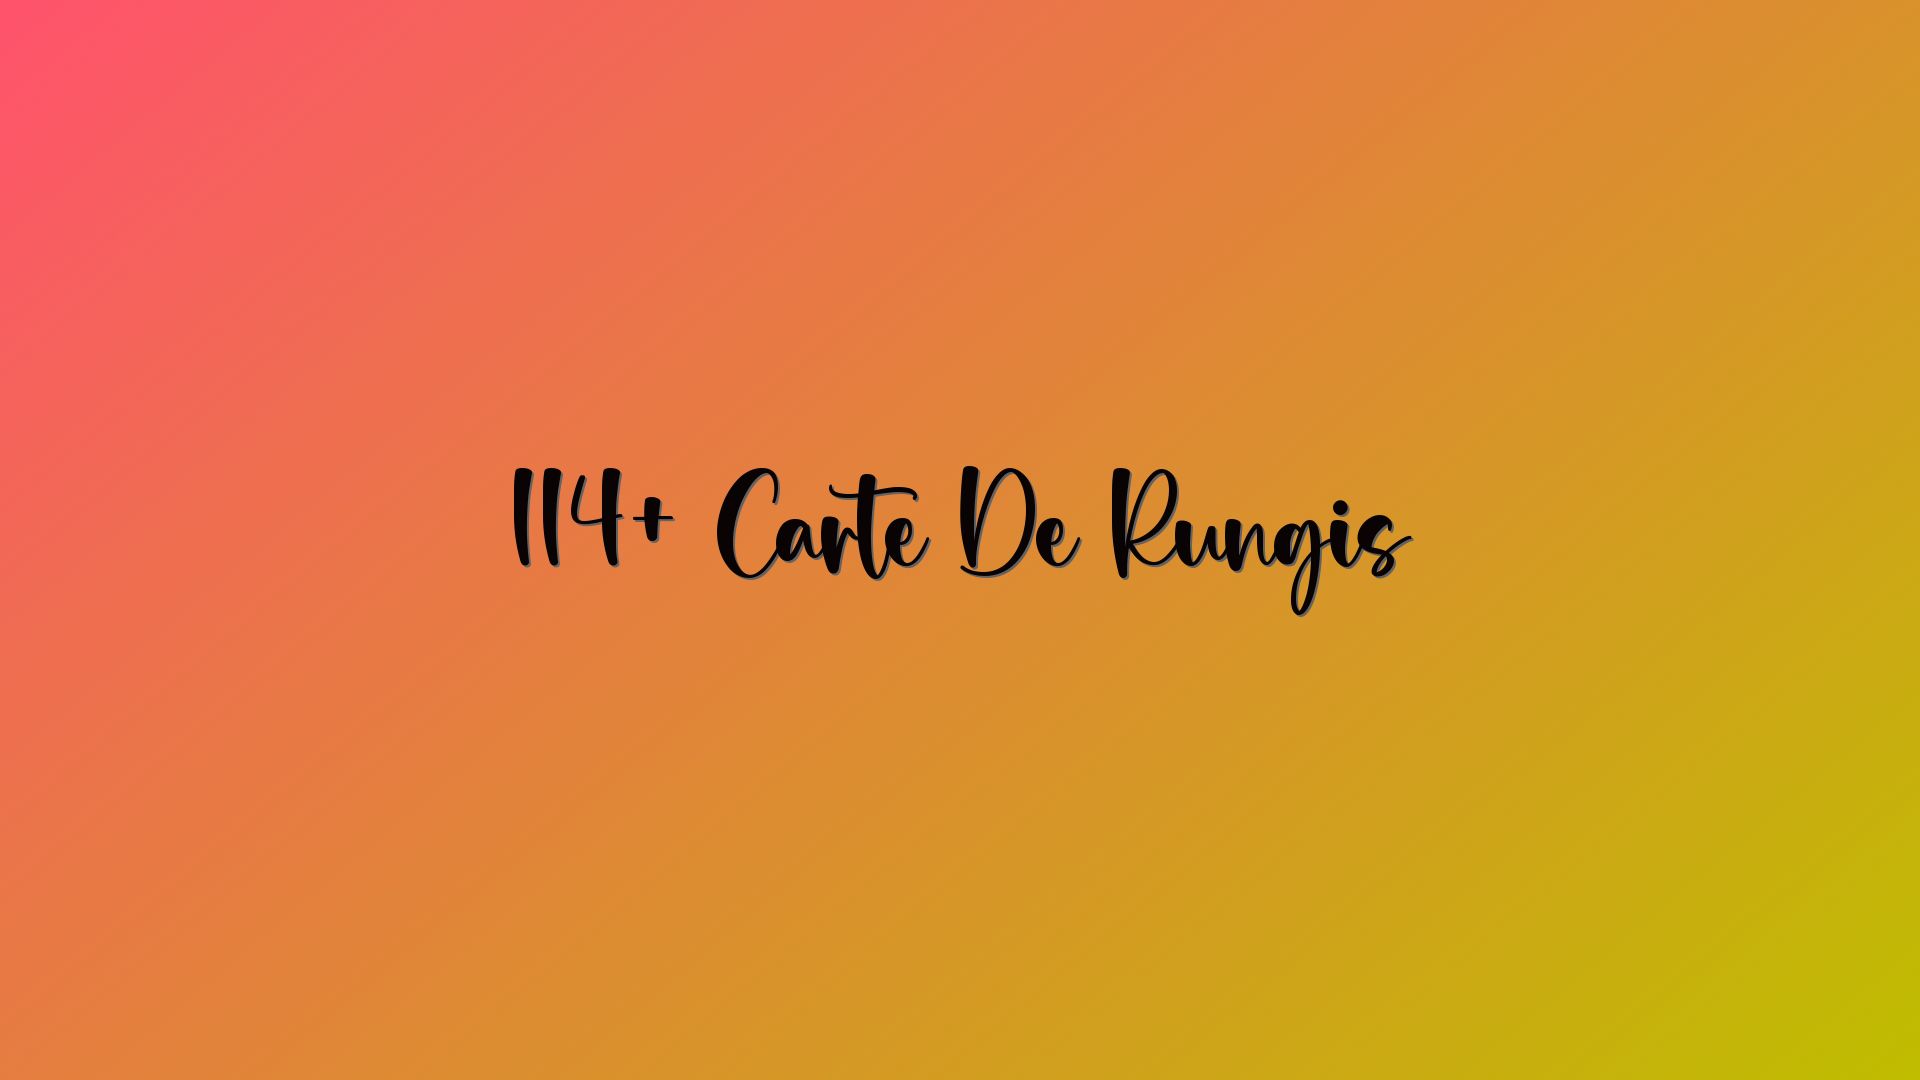 114+ Carte De Rungis